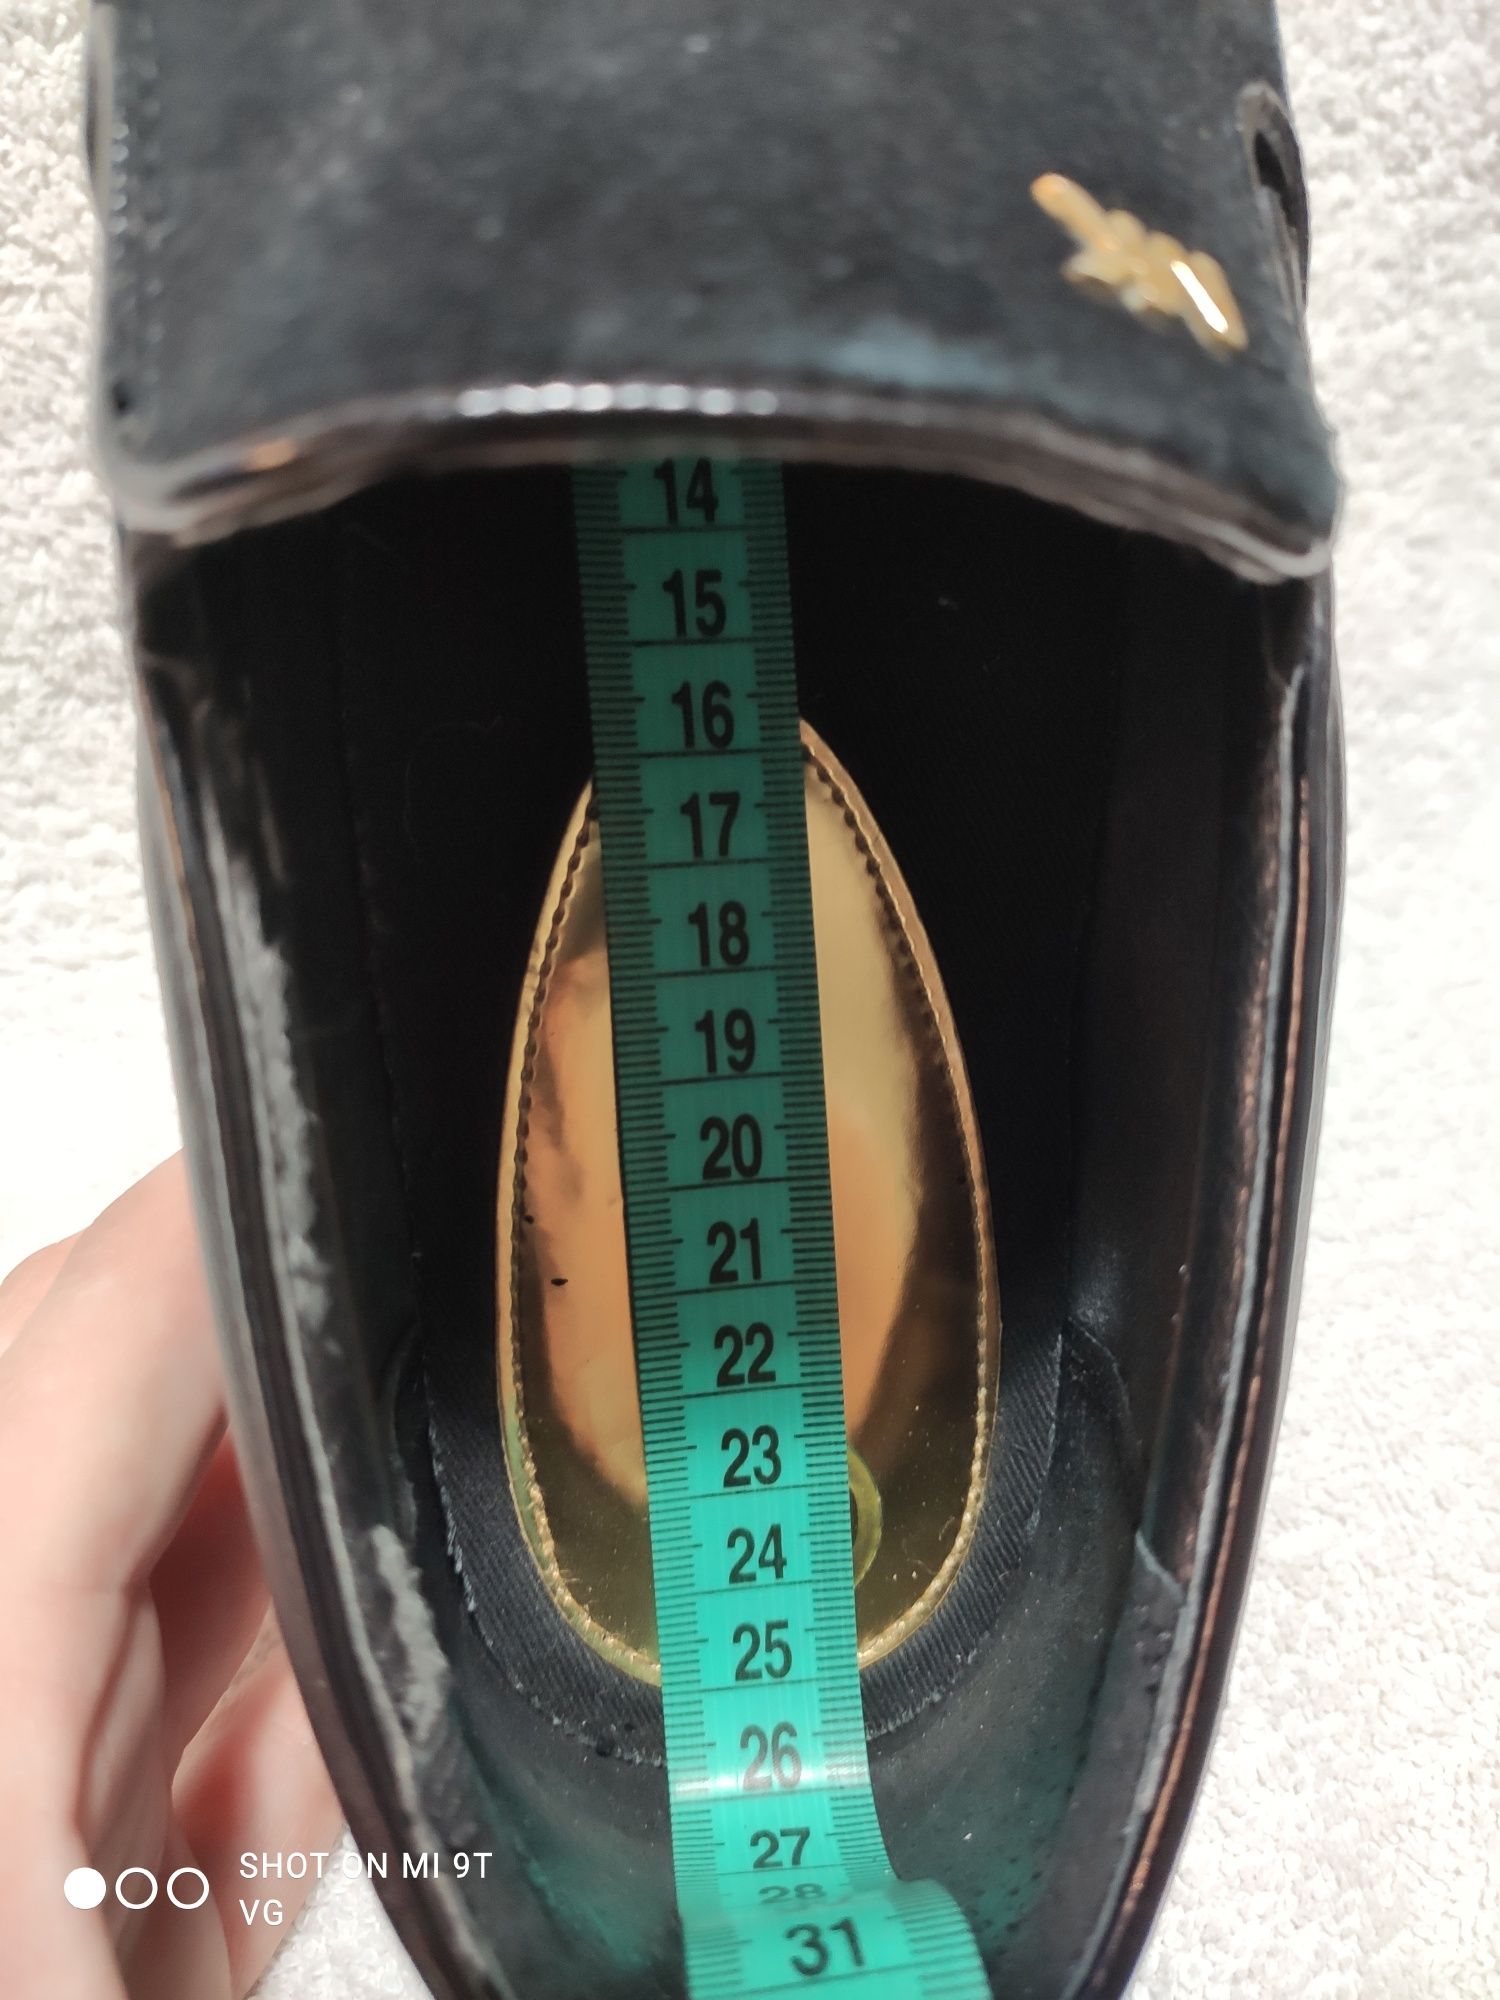 Слипоны Michael Kors, замш, 40 размер, мокасины, кроссовки